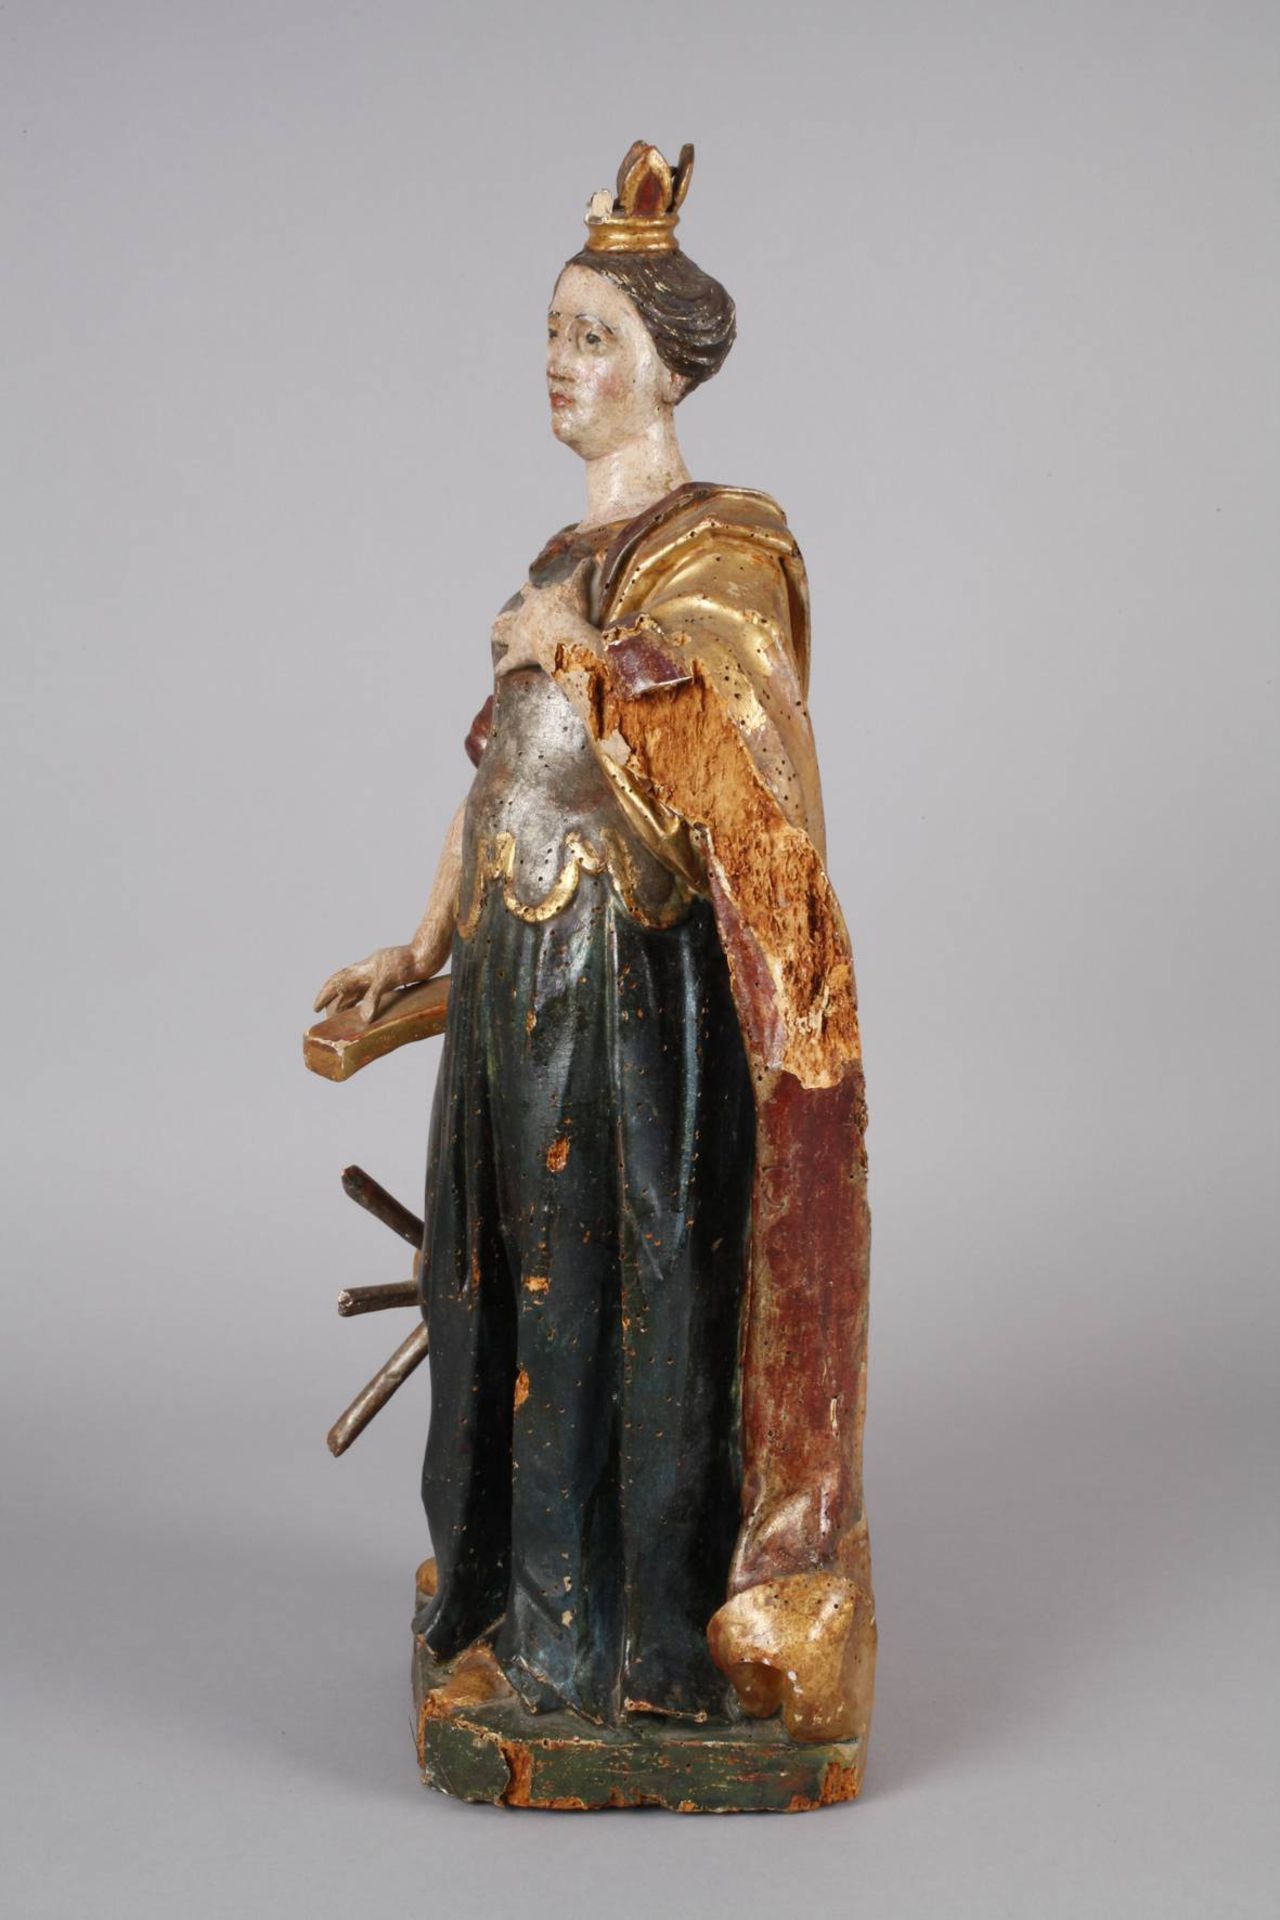 Geschnitzte Heiligenfigur Barock 18. Jh., Holz geschnitzt, kreidegrundiert, mehrfarbig gefasst und - Bild 3 aus 8